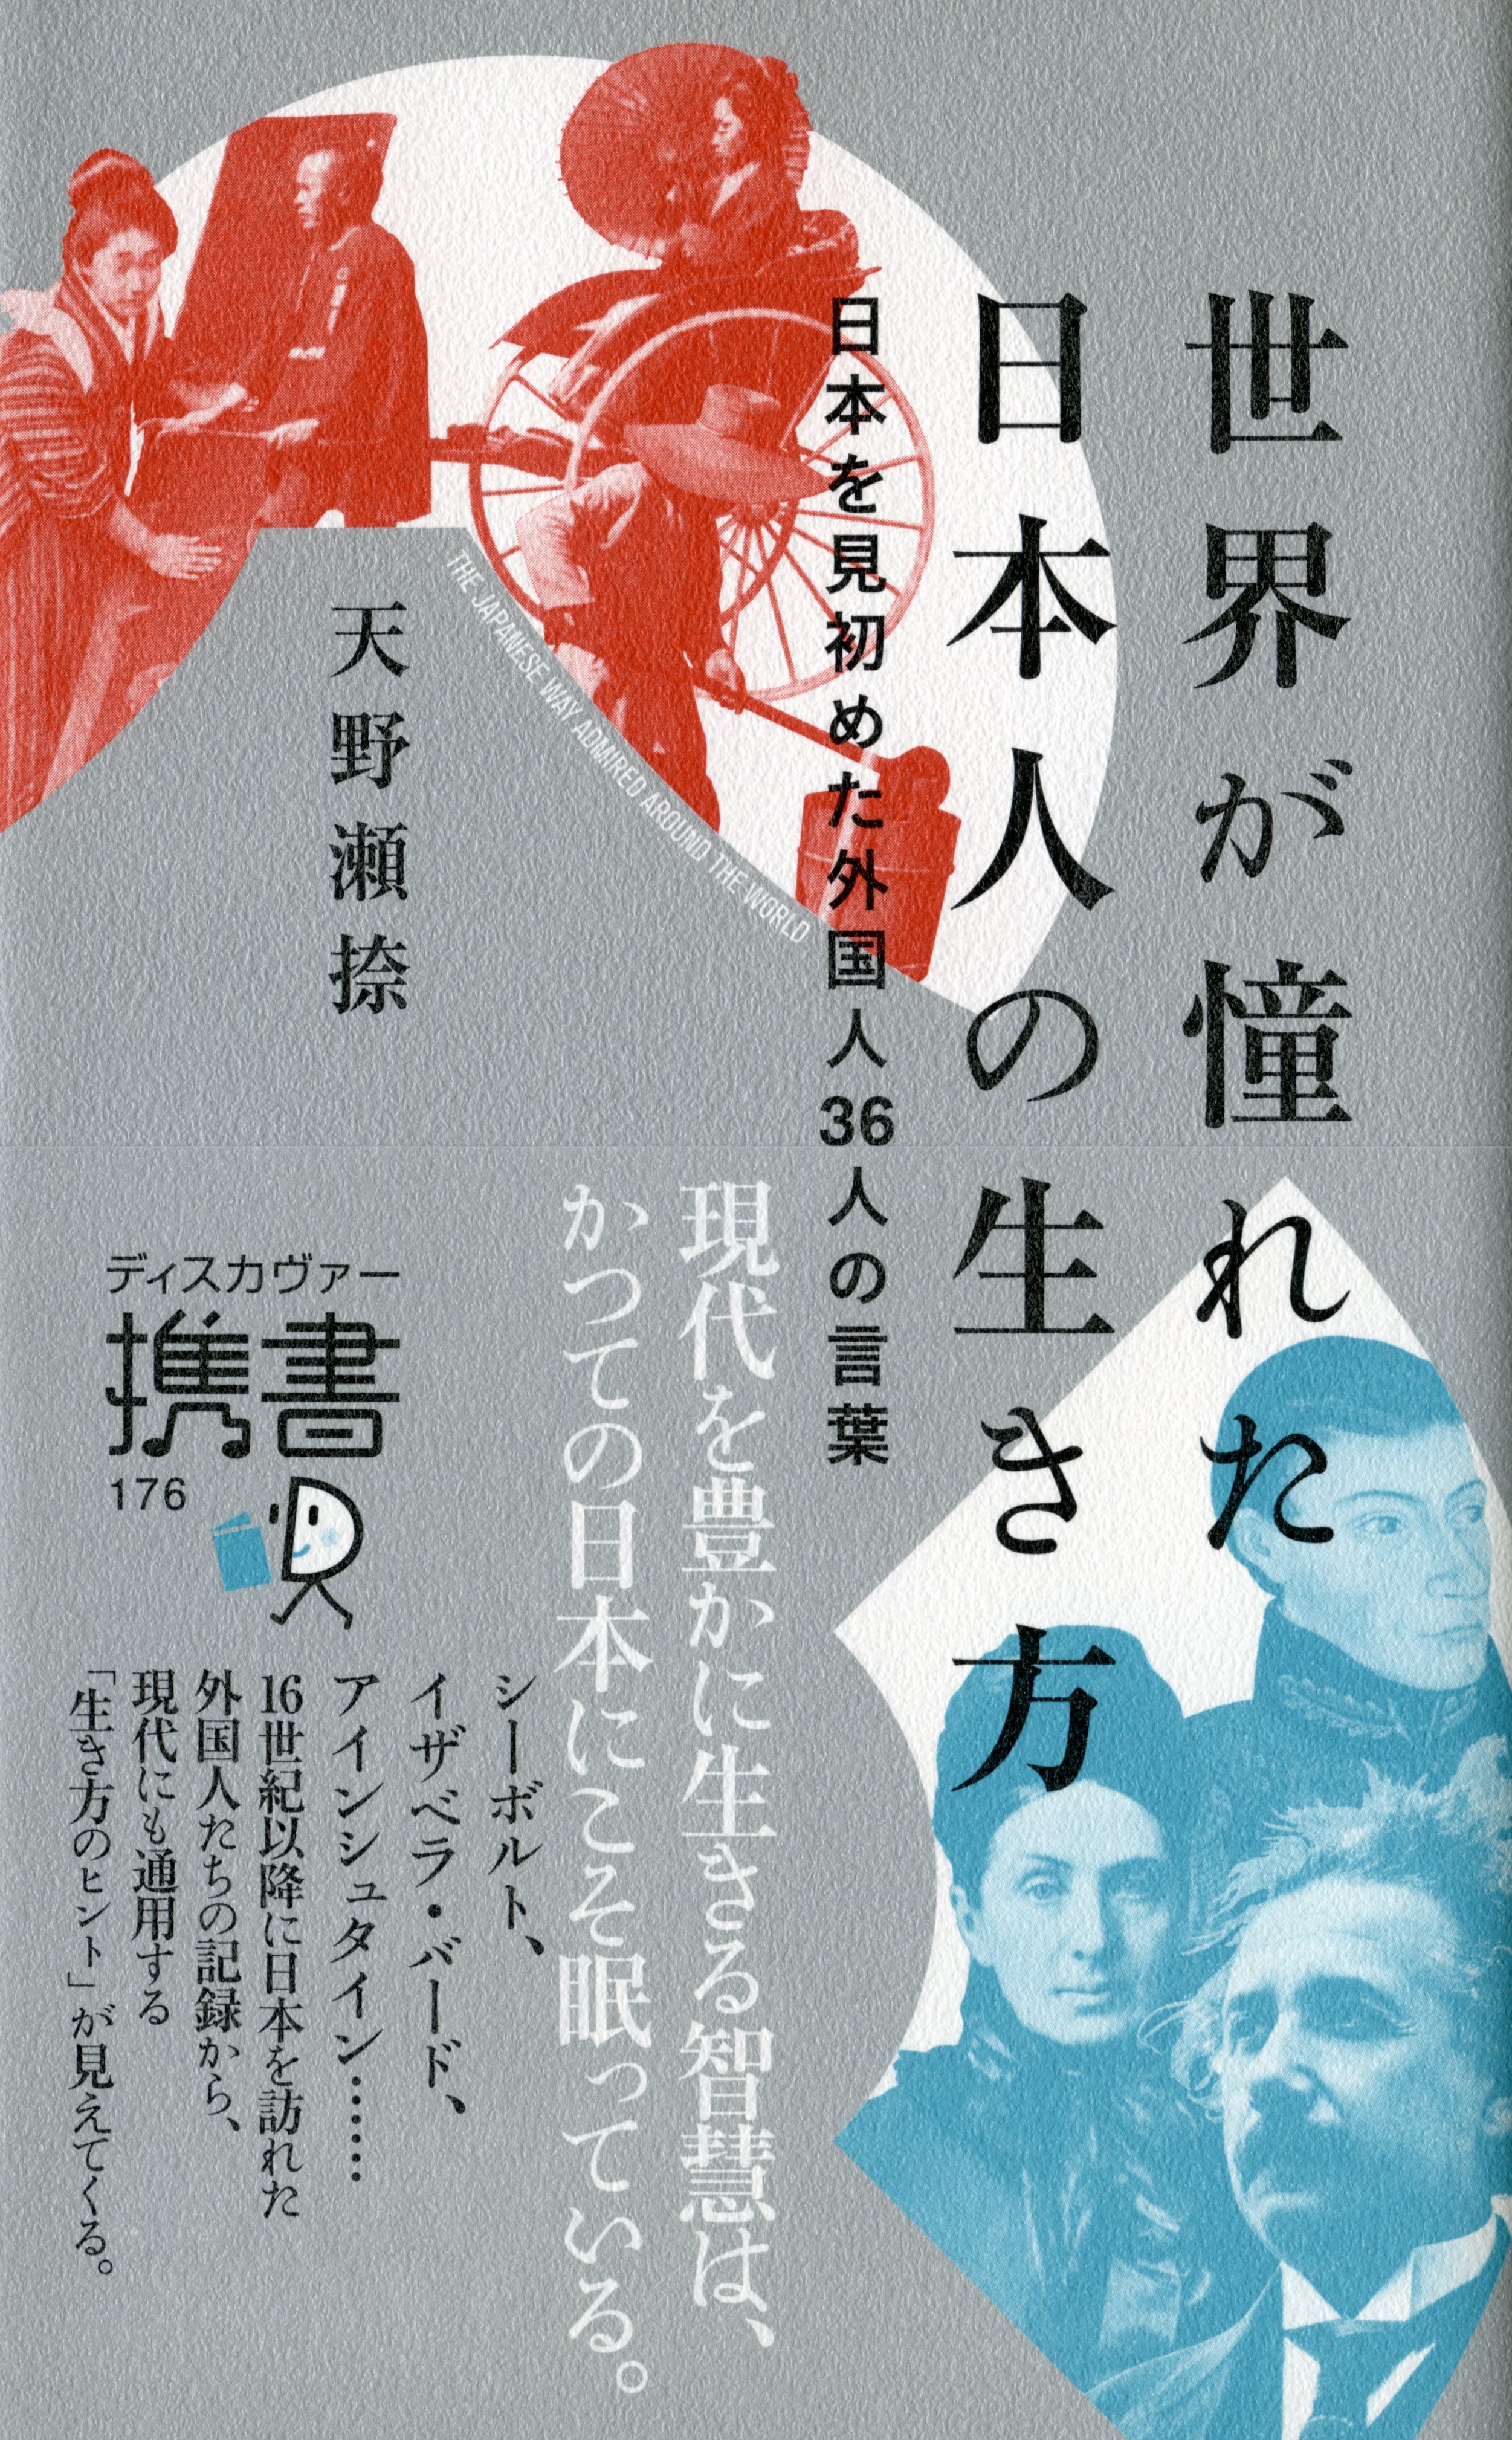 世界の偉人たちが感動した 古代から続く日本人の美しい生き方とは 世界が憧れた日本人 の生き方 発売です 株式会社ディスカヴァー トゥエンティワンのプレスリリース